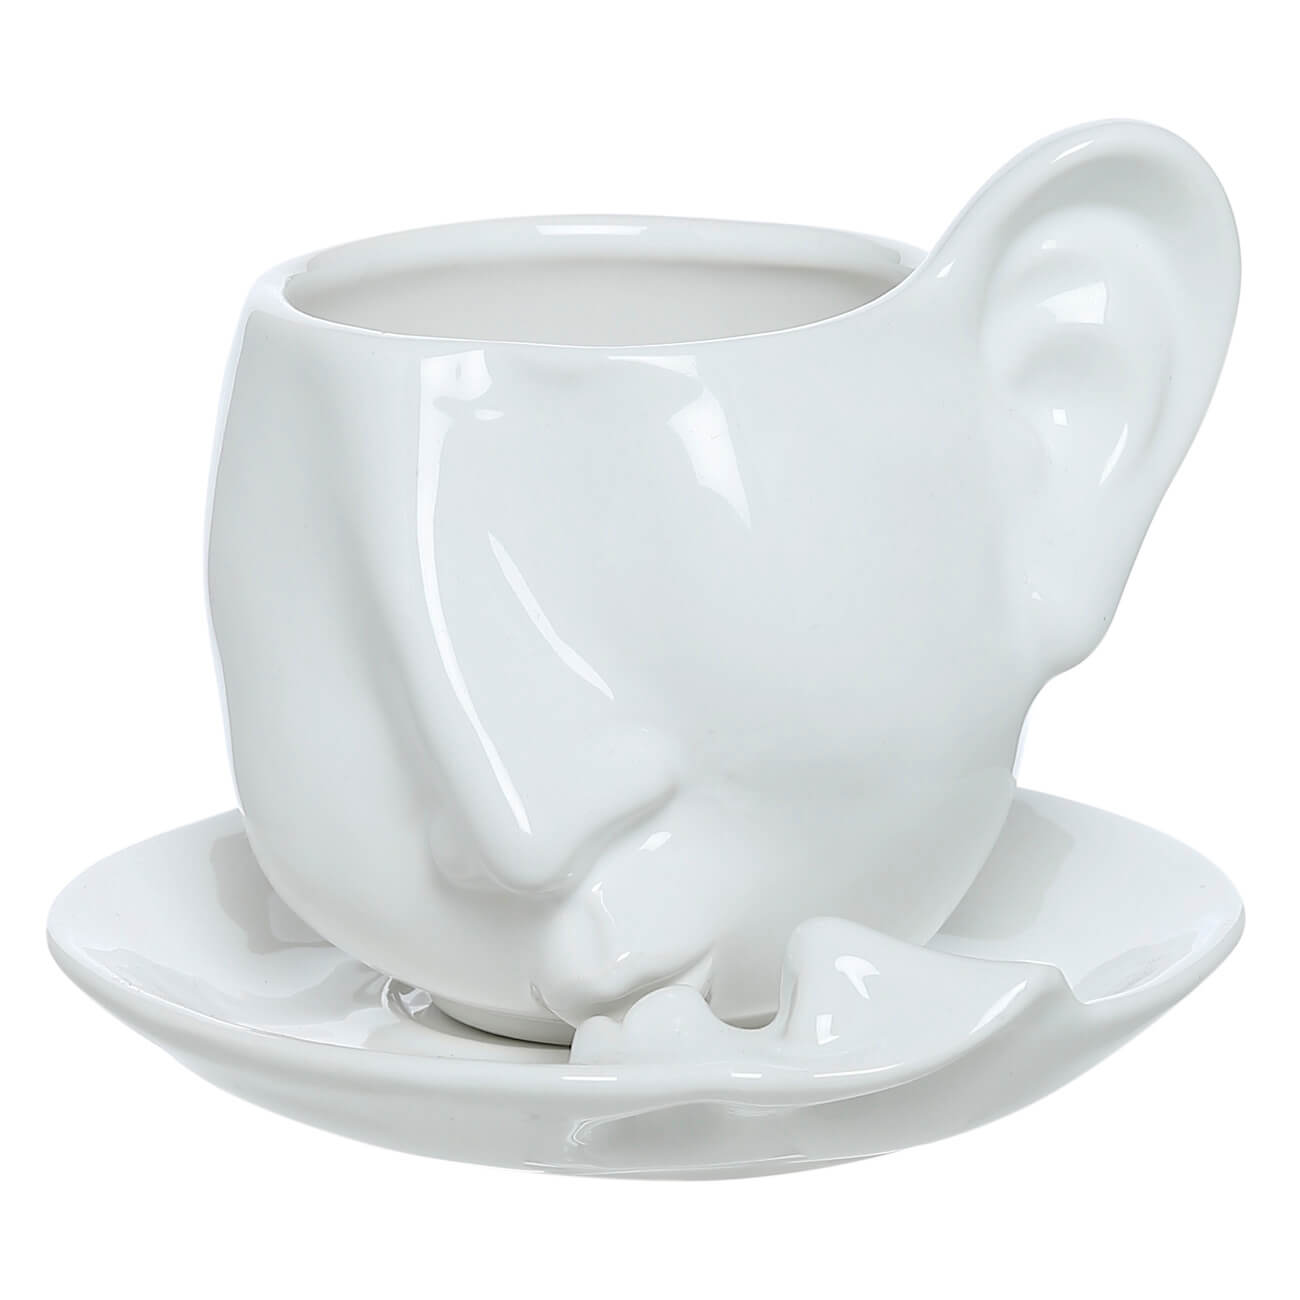 Пара чайная, 1 перс, 2 пр, 260 мл, керамика, белая, Поцелуй, He&She пара чайная gipfel blanche чашка и блюдце